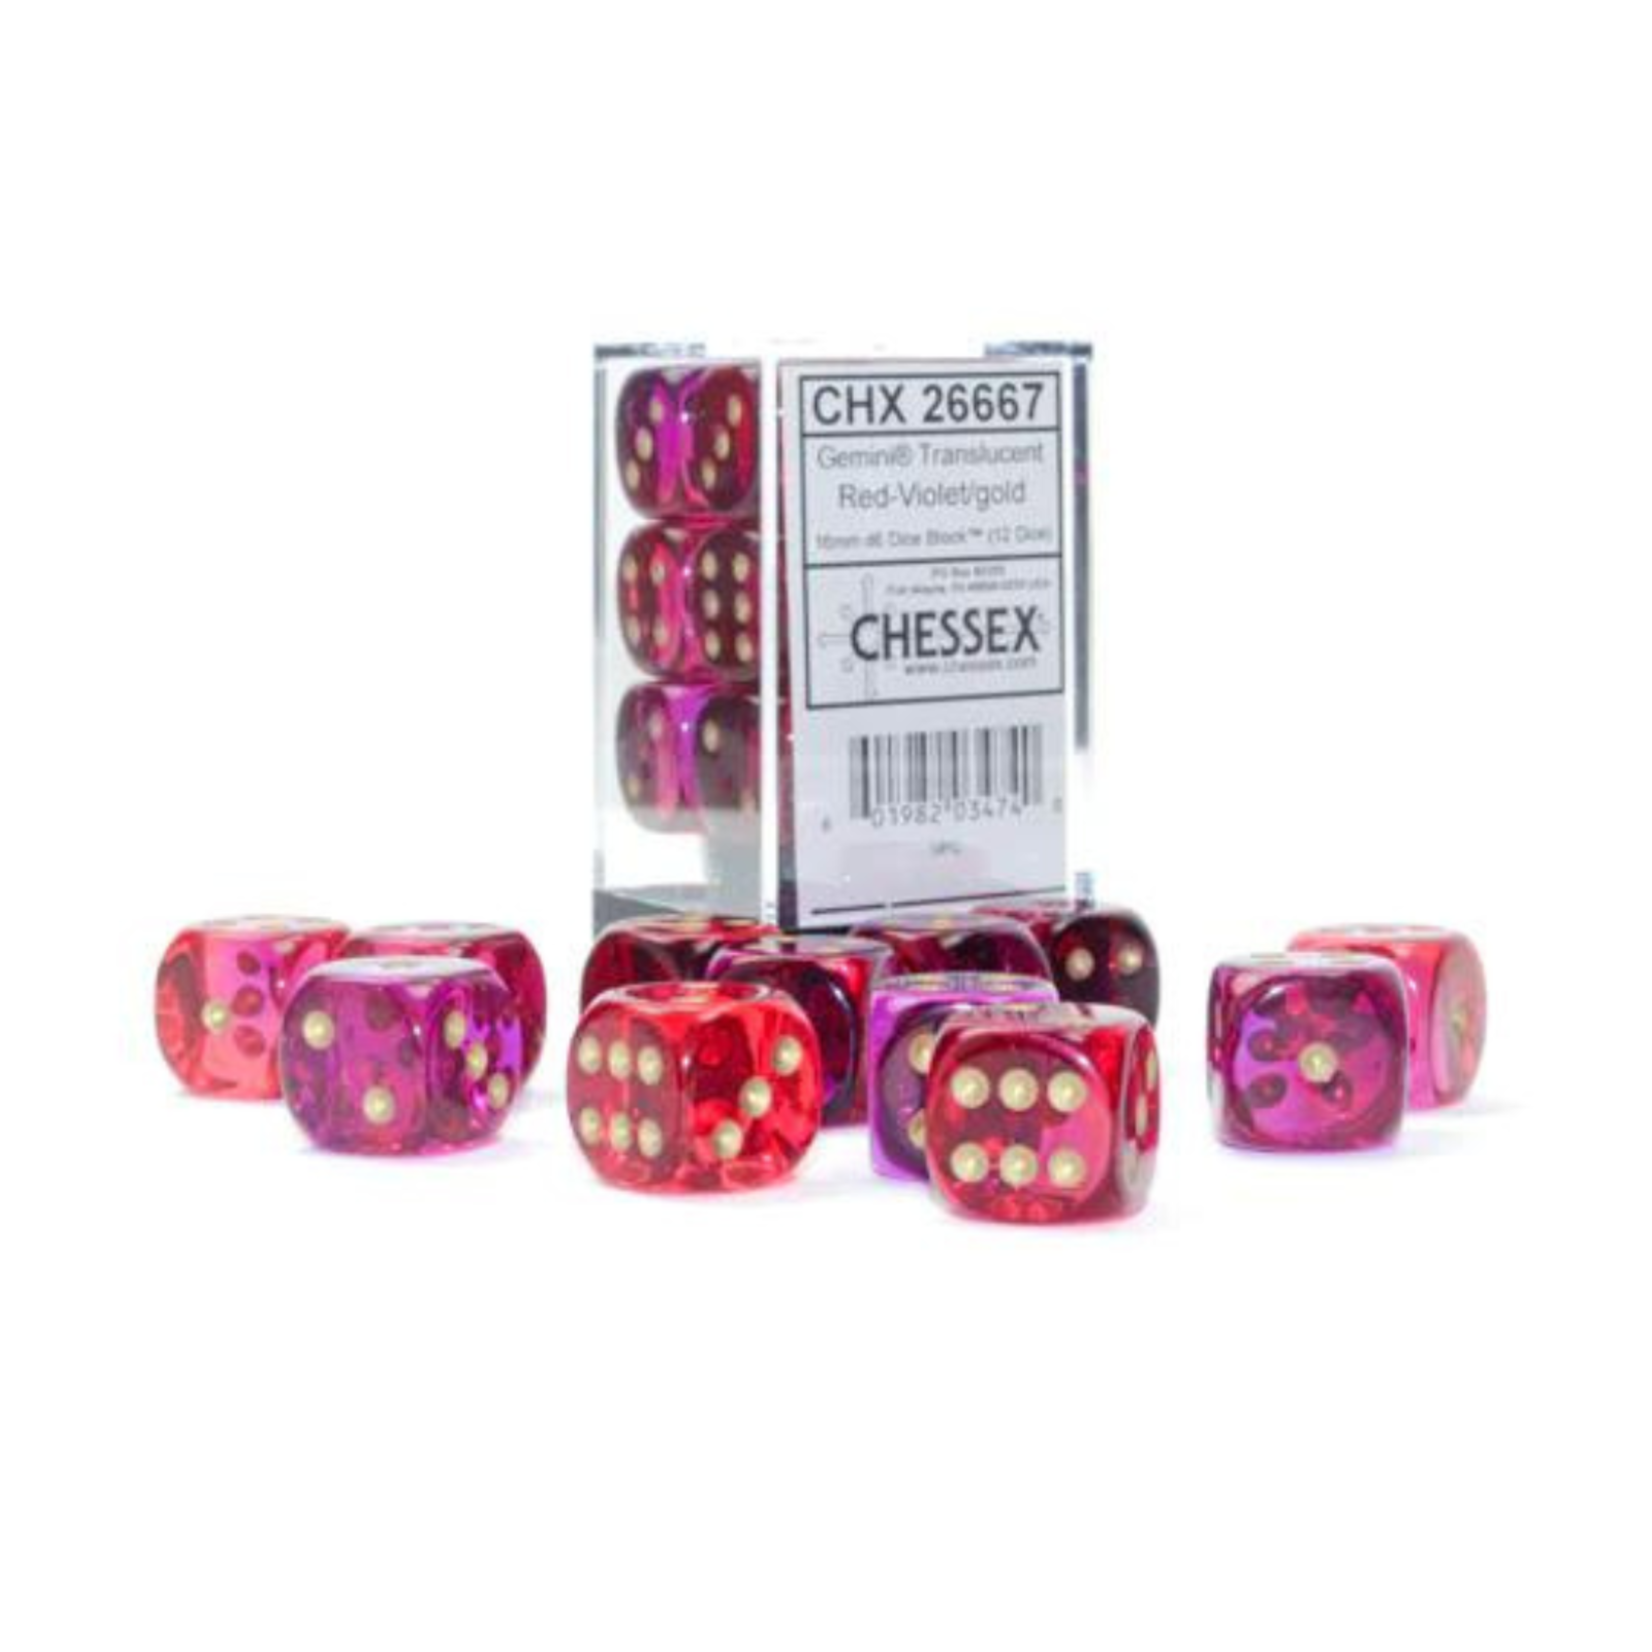 Chessex Kit de Dés Chessex Translucent Red-Violet/Gold 12d6